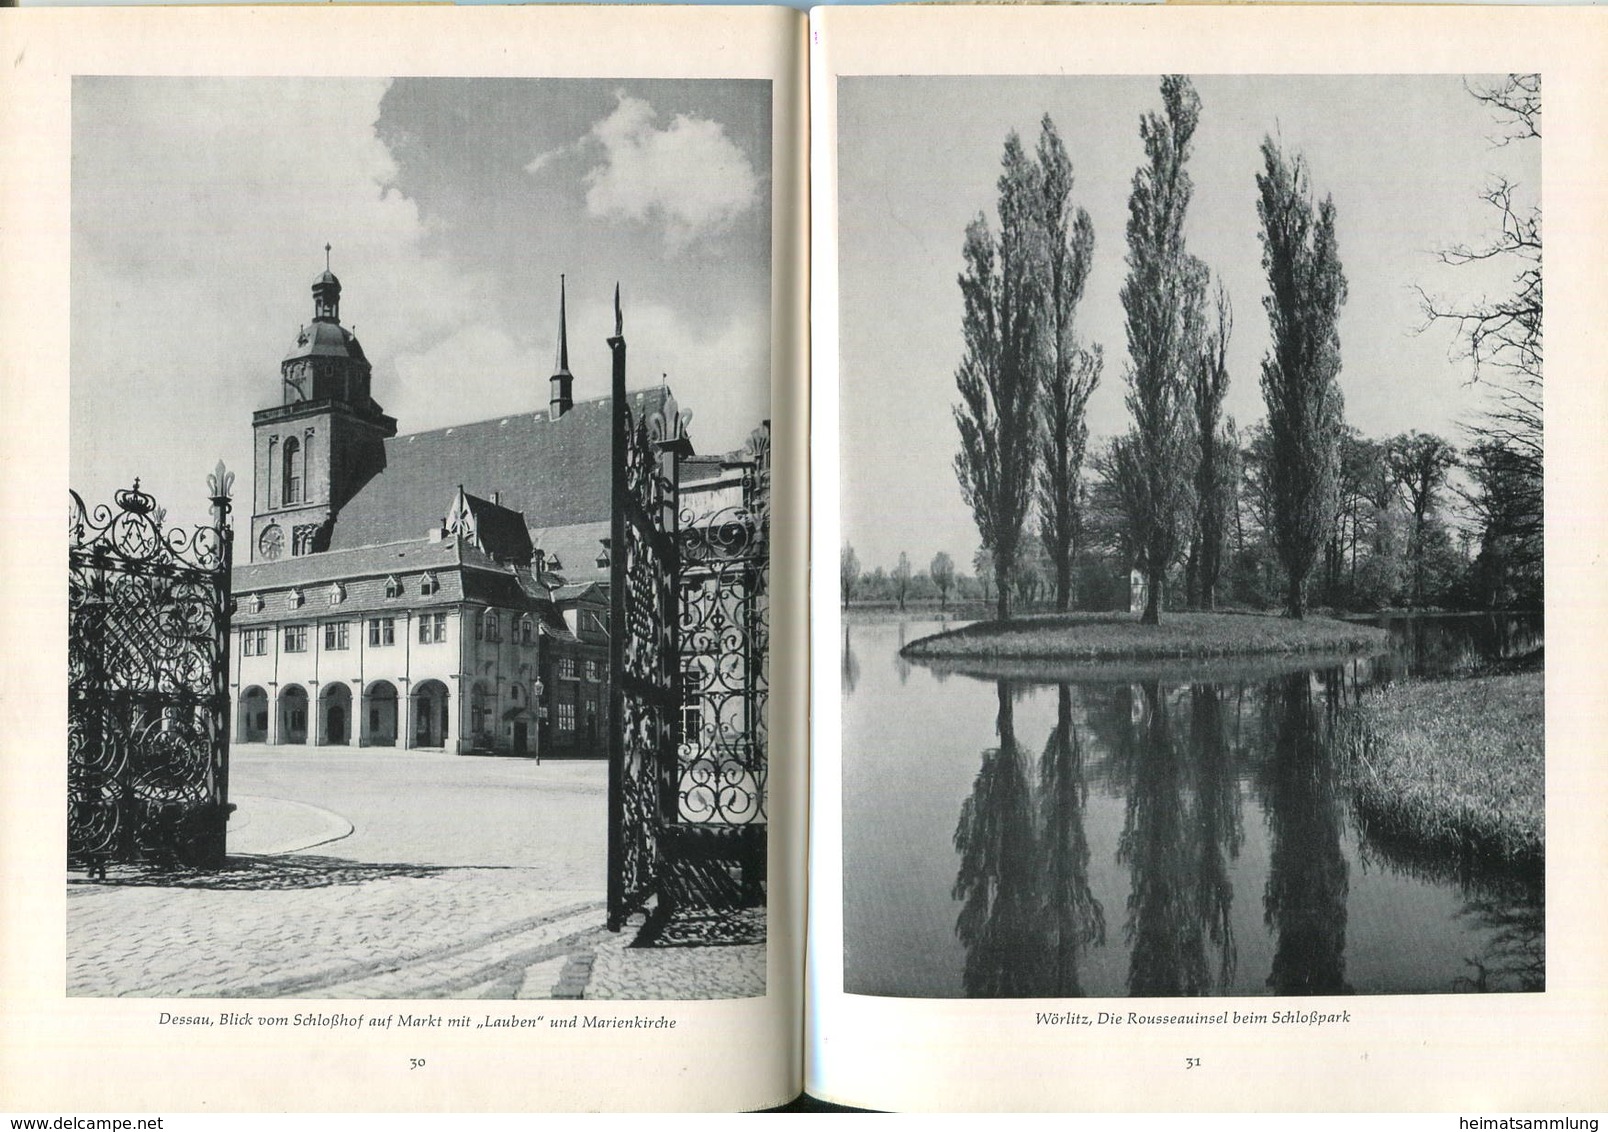 Sachsen-Anhalt 1963 - 48 Seiten Mit 50 Abbildungen - Text Karl Rauch - Langewiesche Bücherei - Sachsen-Anhalt